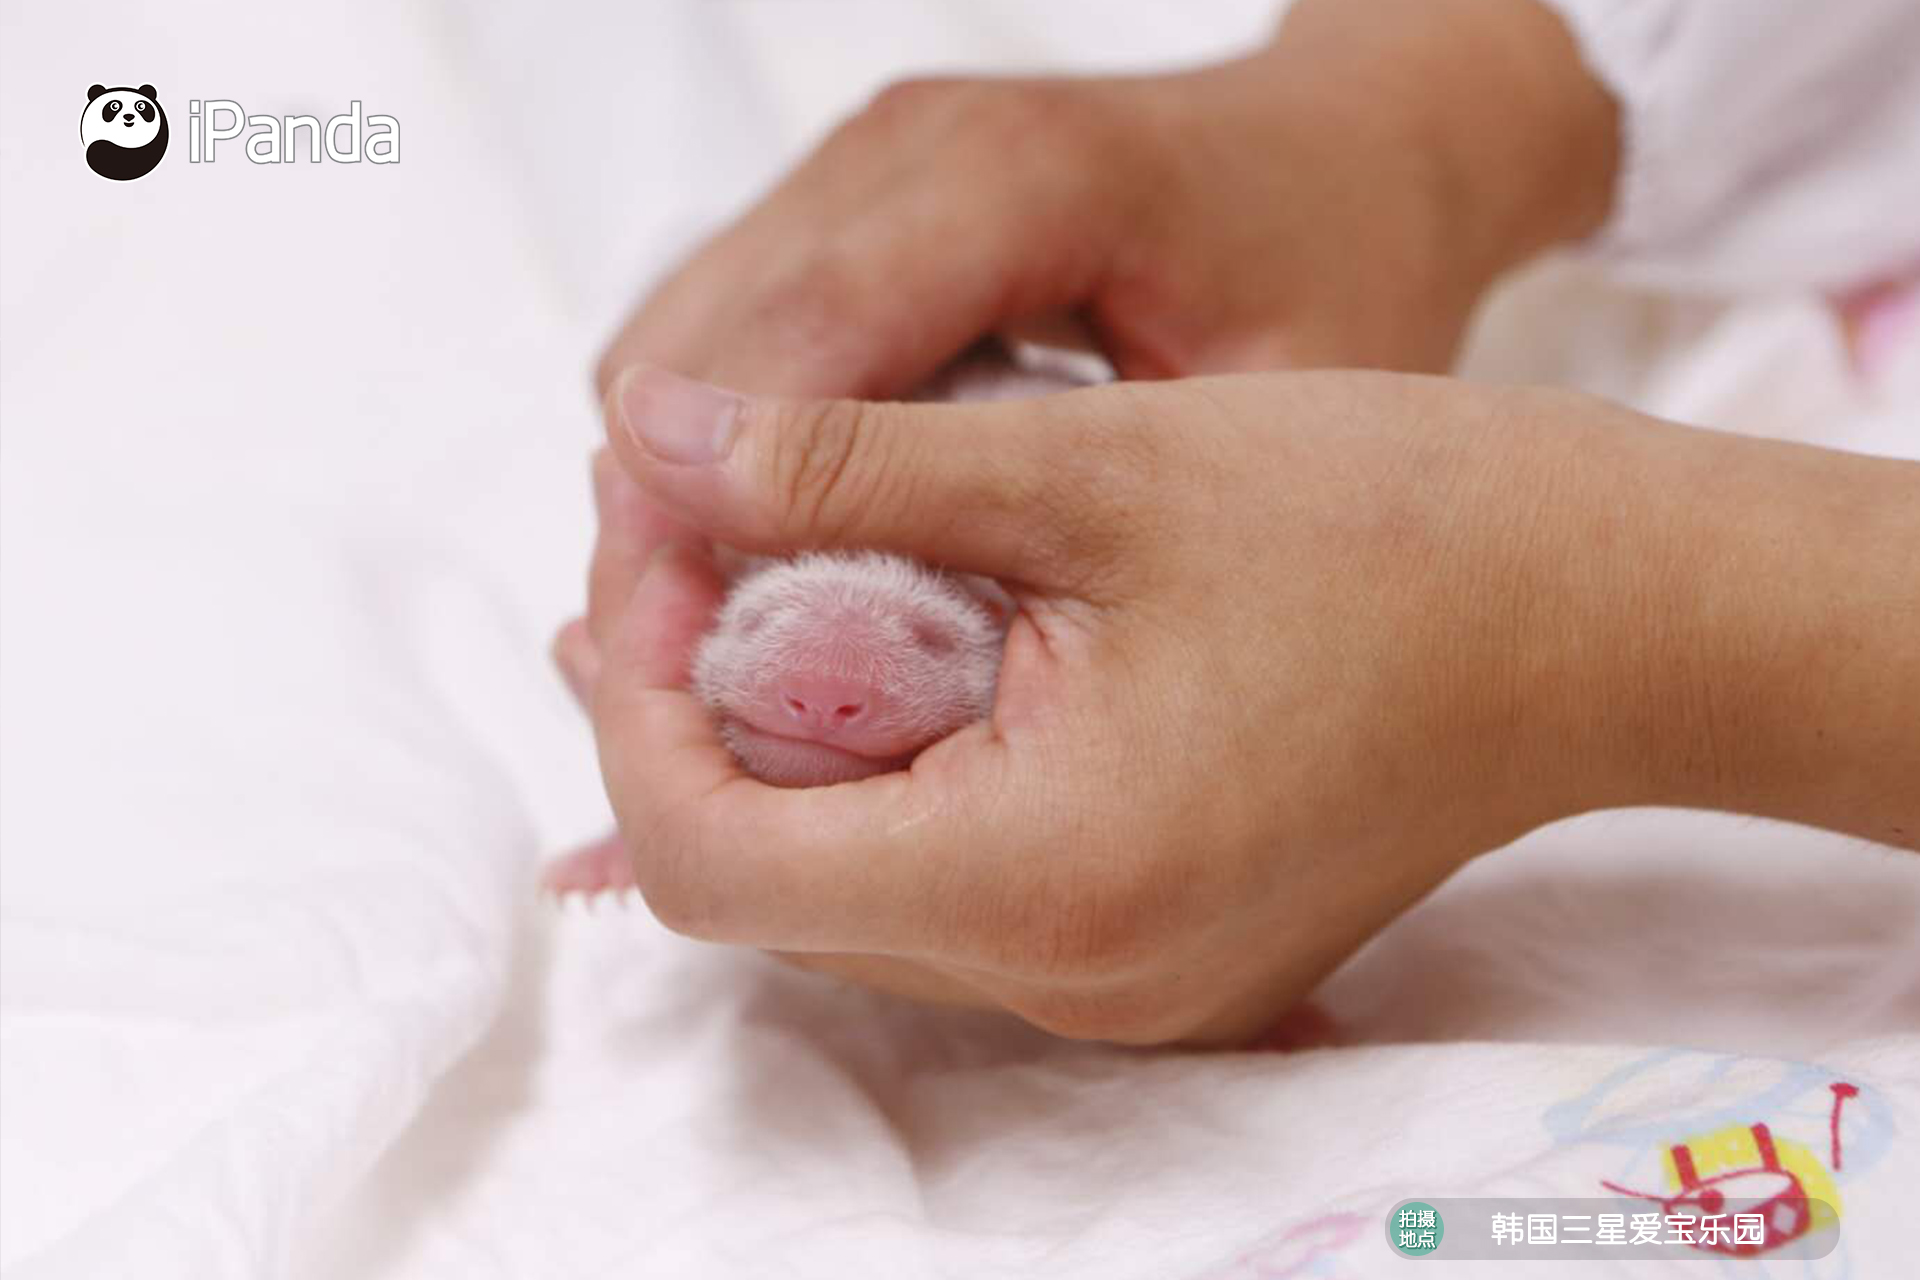 飼養員正在照顧剛出生的熊貓寶寶